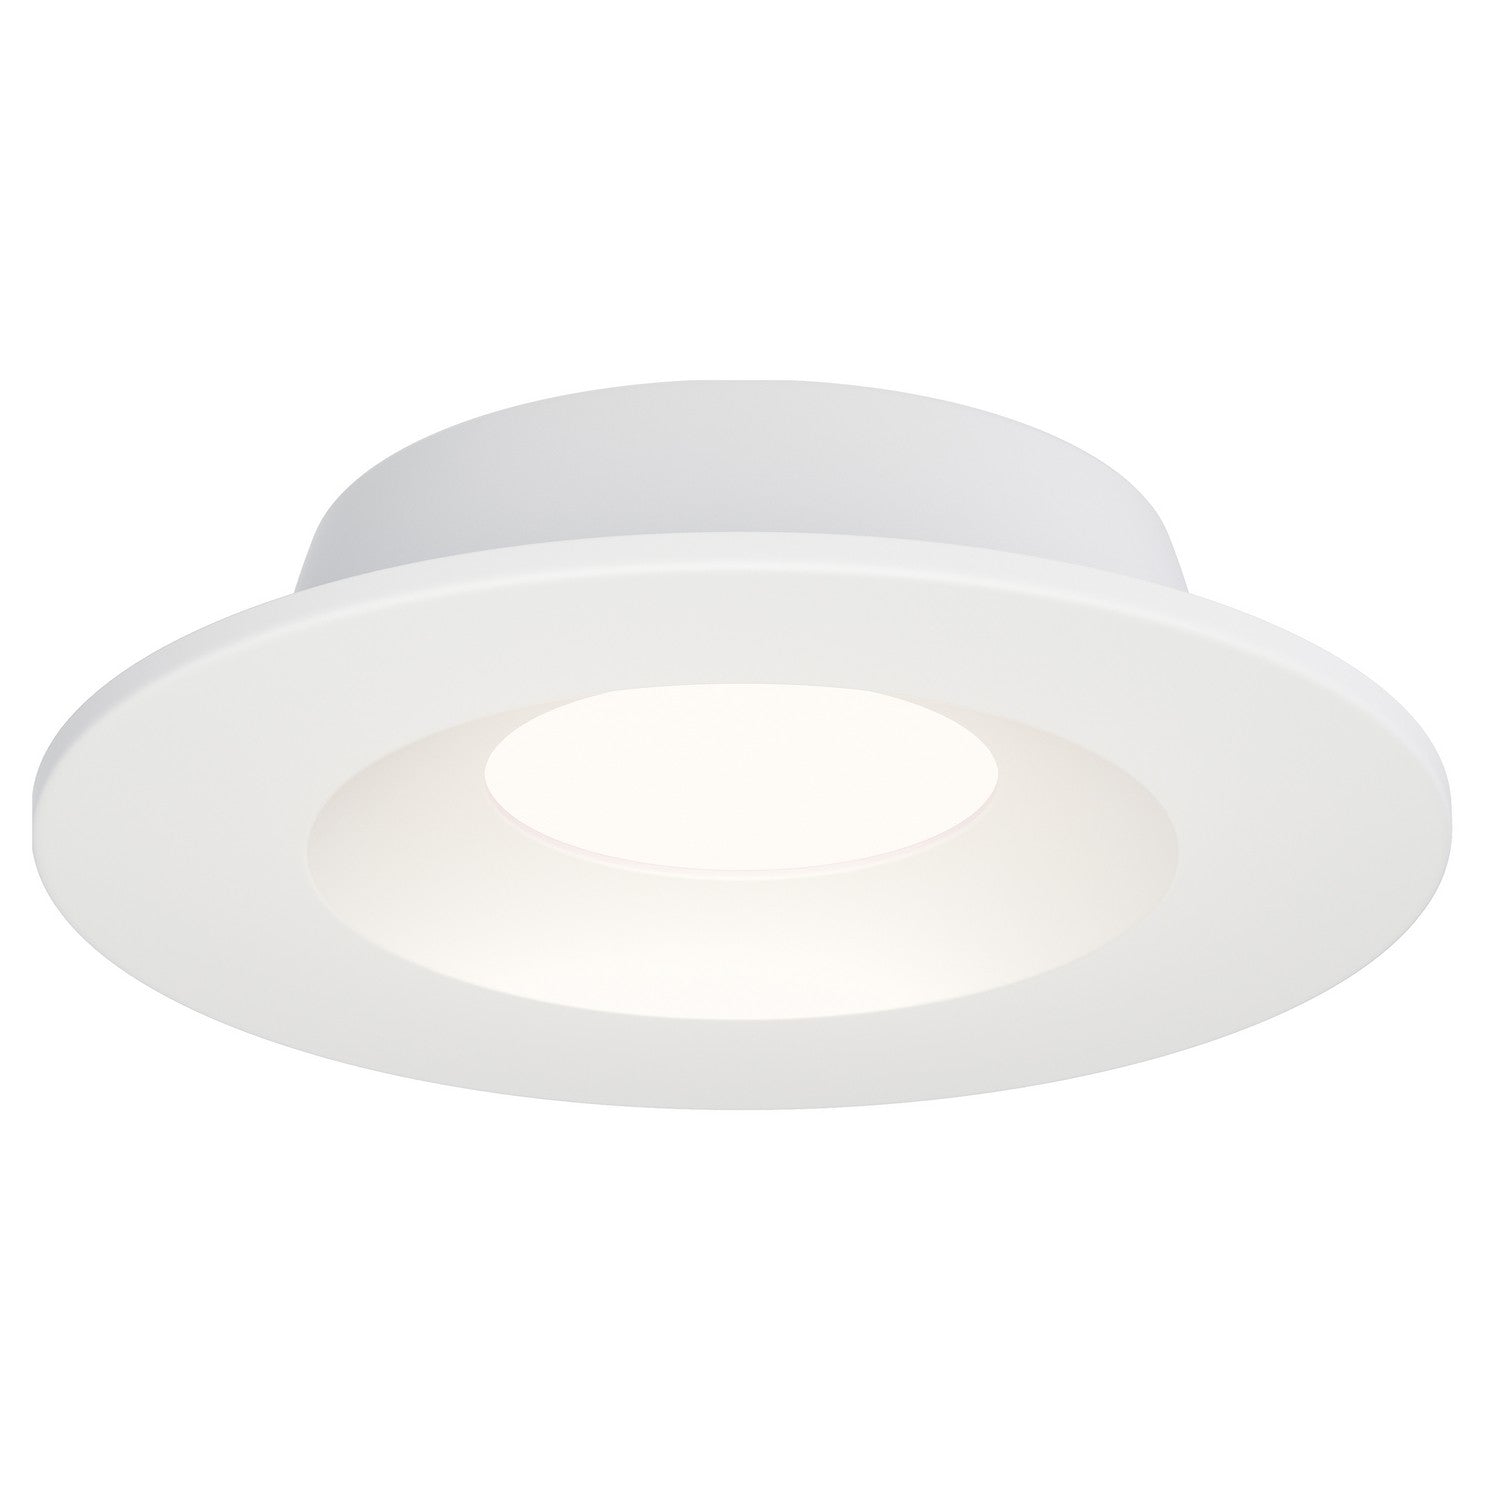 Maxim - LED Recessed DownLight - Crisp - White- Union Lighting Luminaires Decor